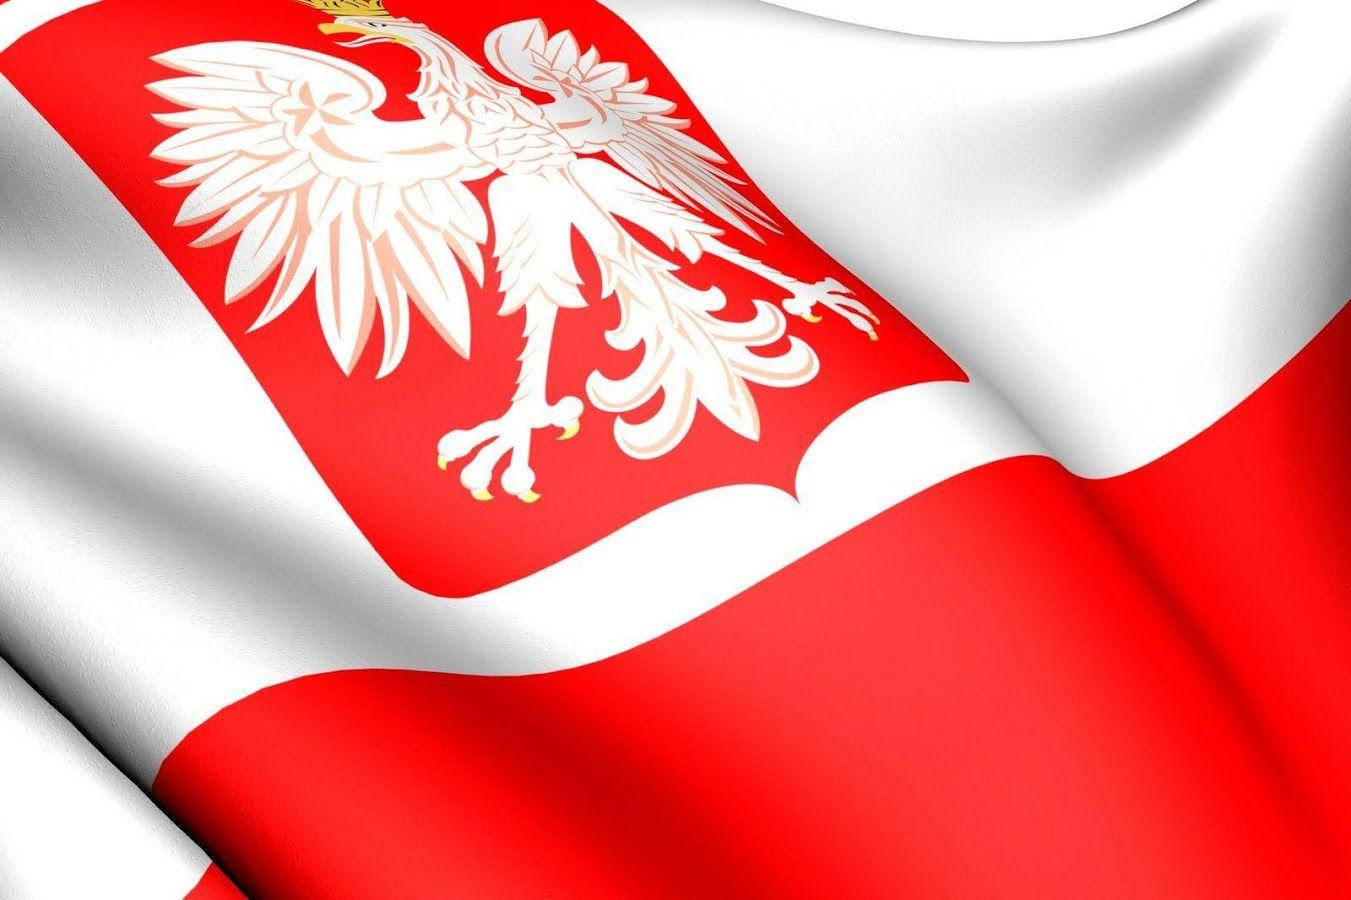 Banderade Polonia Ondeando En El Aire. Fondo de pantalla